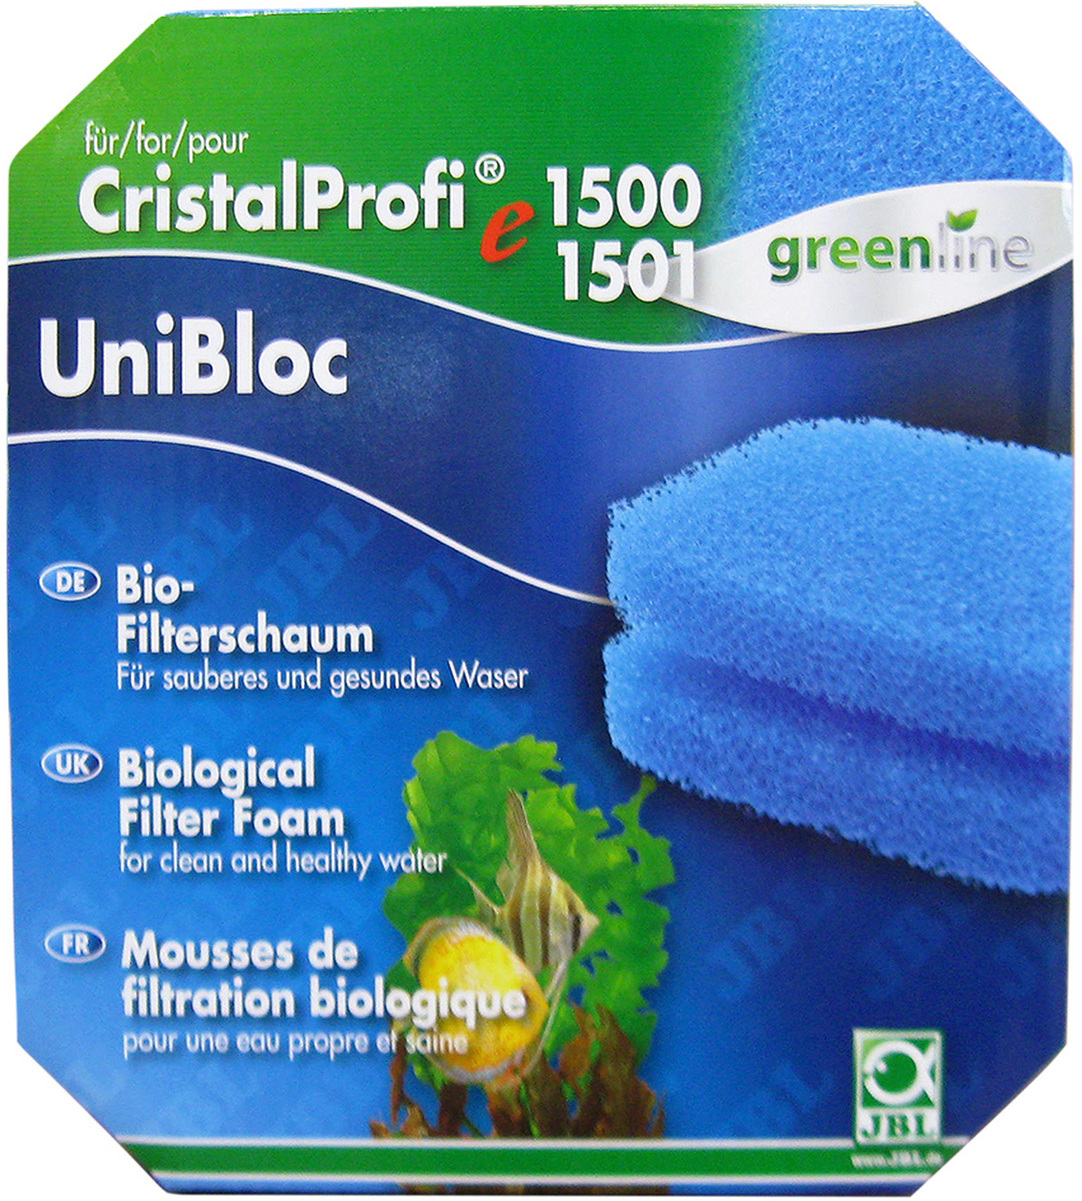 JBL UniBloc material filtrant